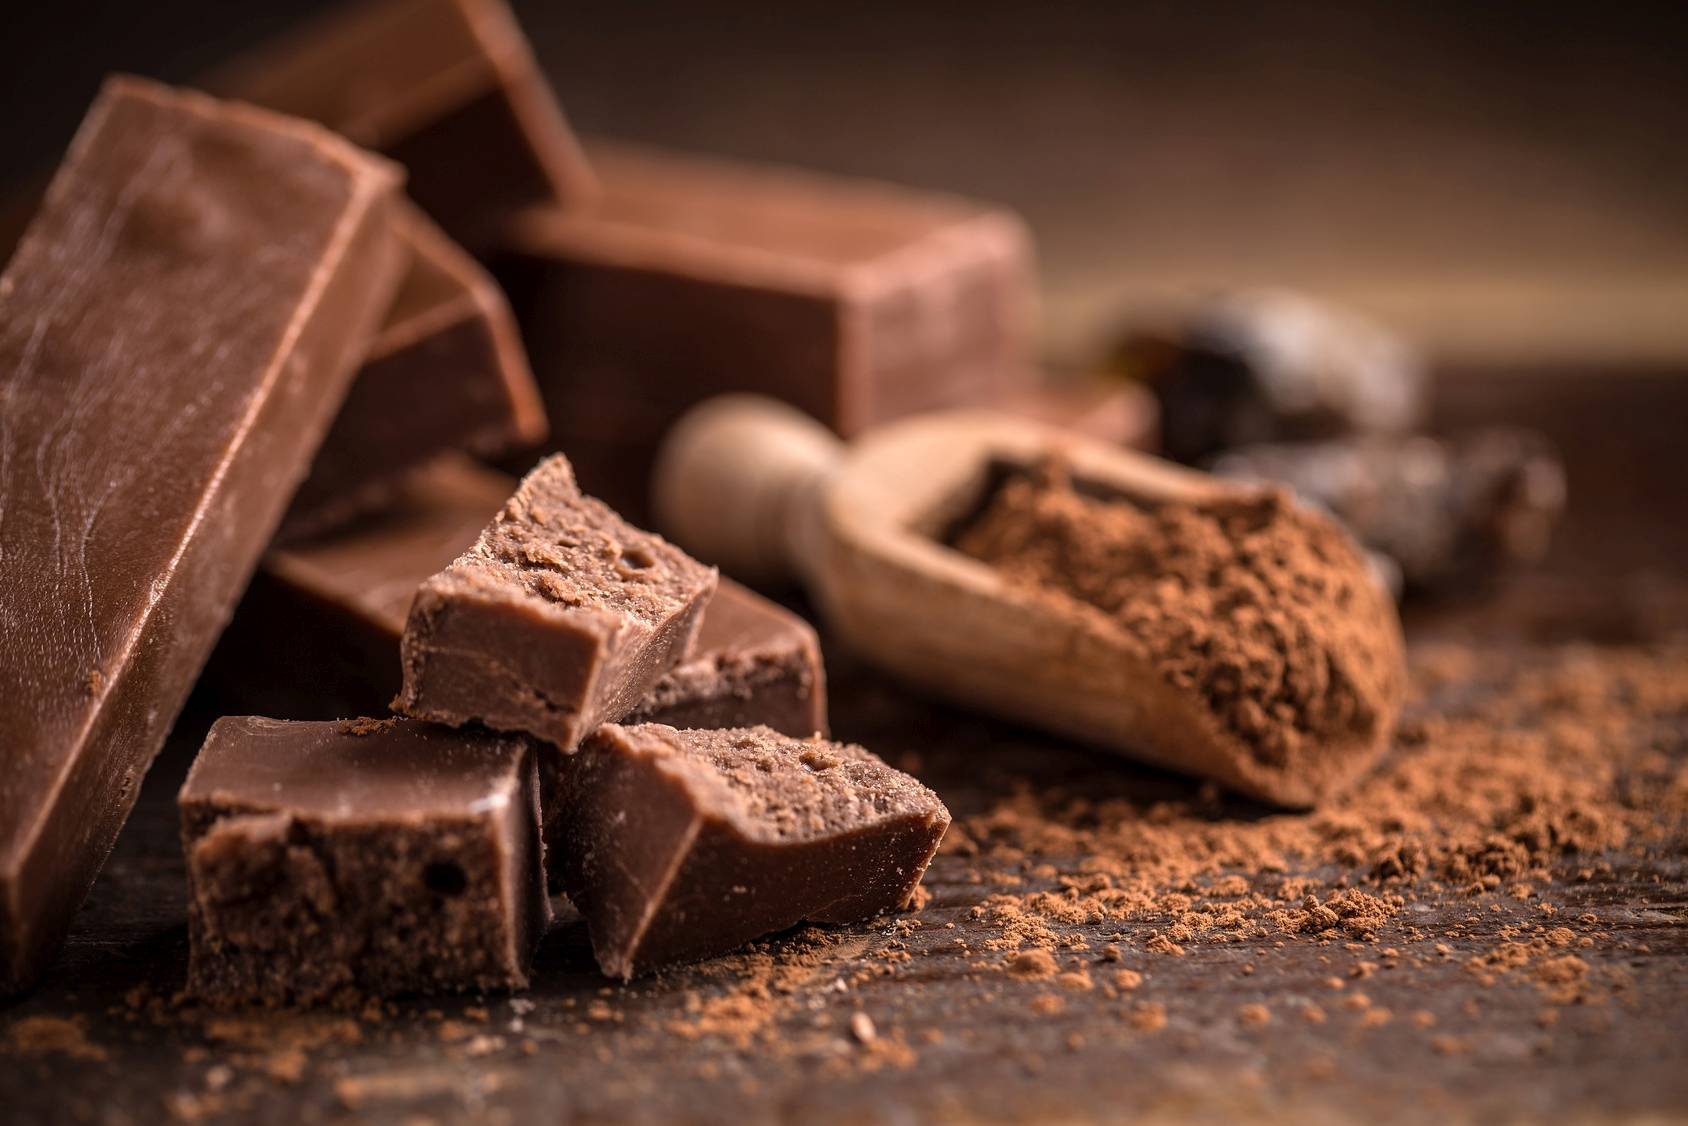 Czekolada dla zdrowia, urody i przyjemności - właściwości prozdrowotne. Kawałki czekolady i kakao.